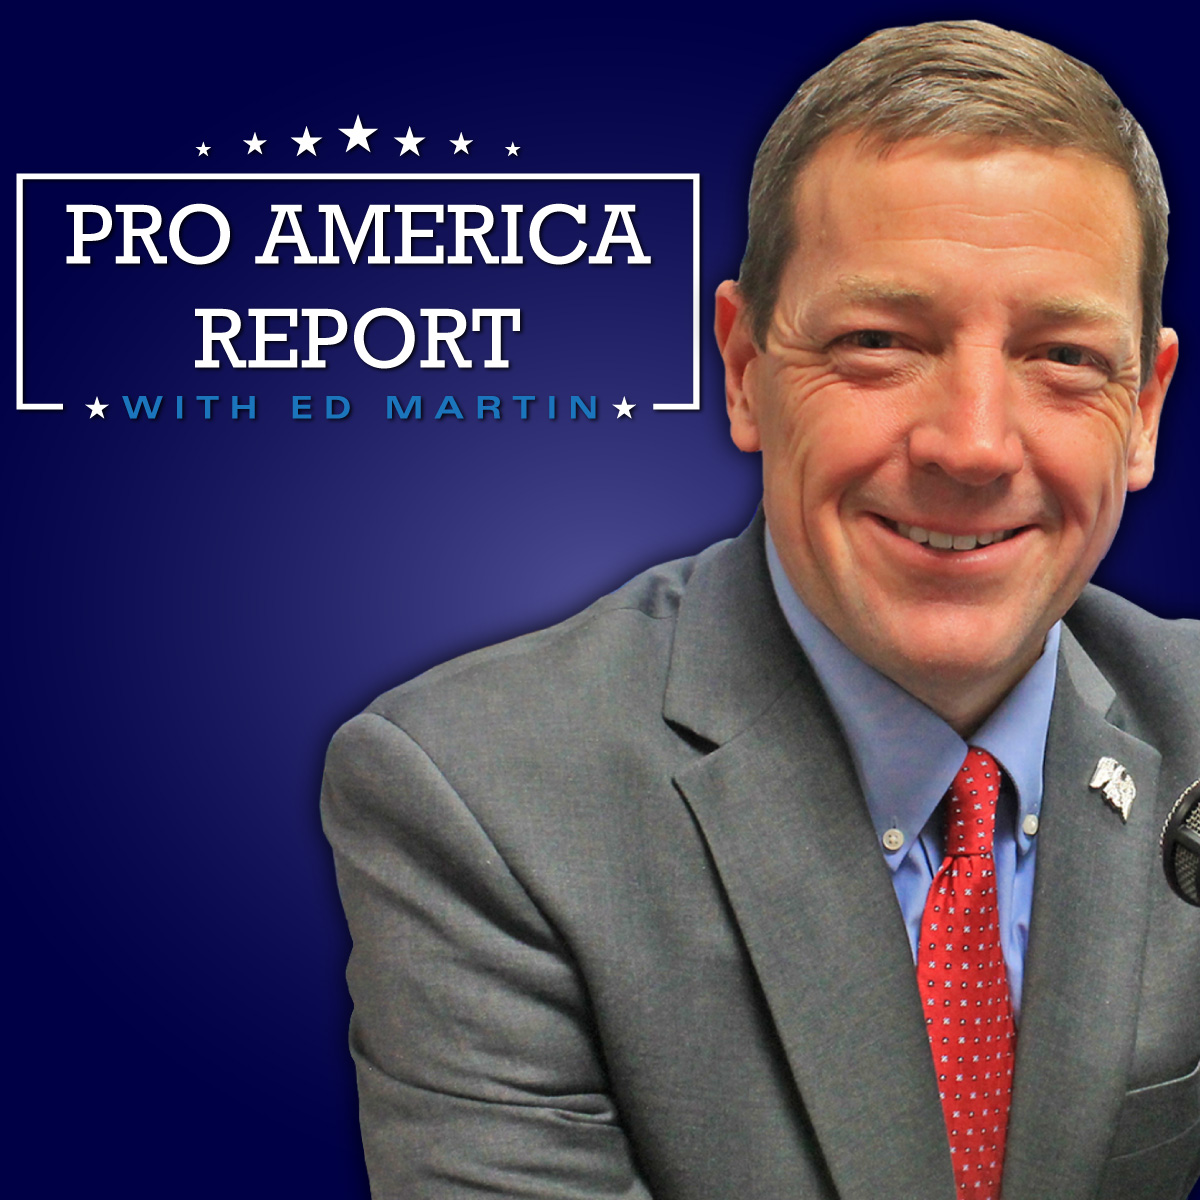 The Pro America Report Ed Martin 06.03.2020